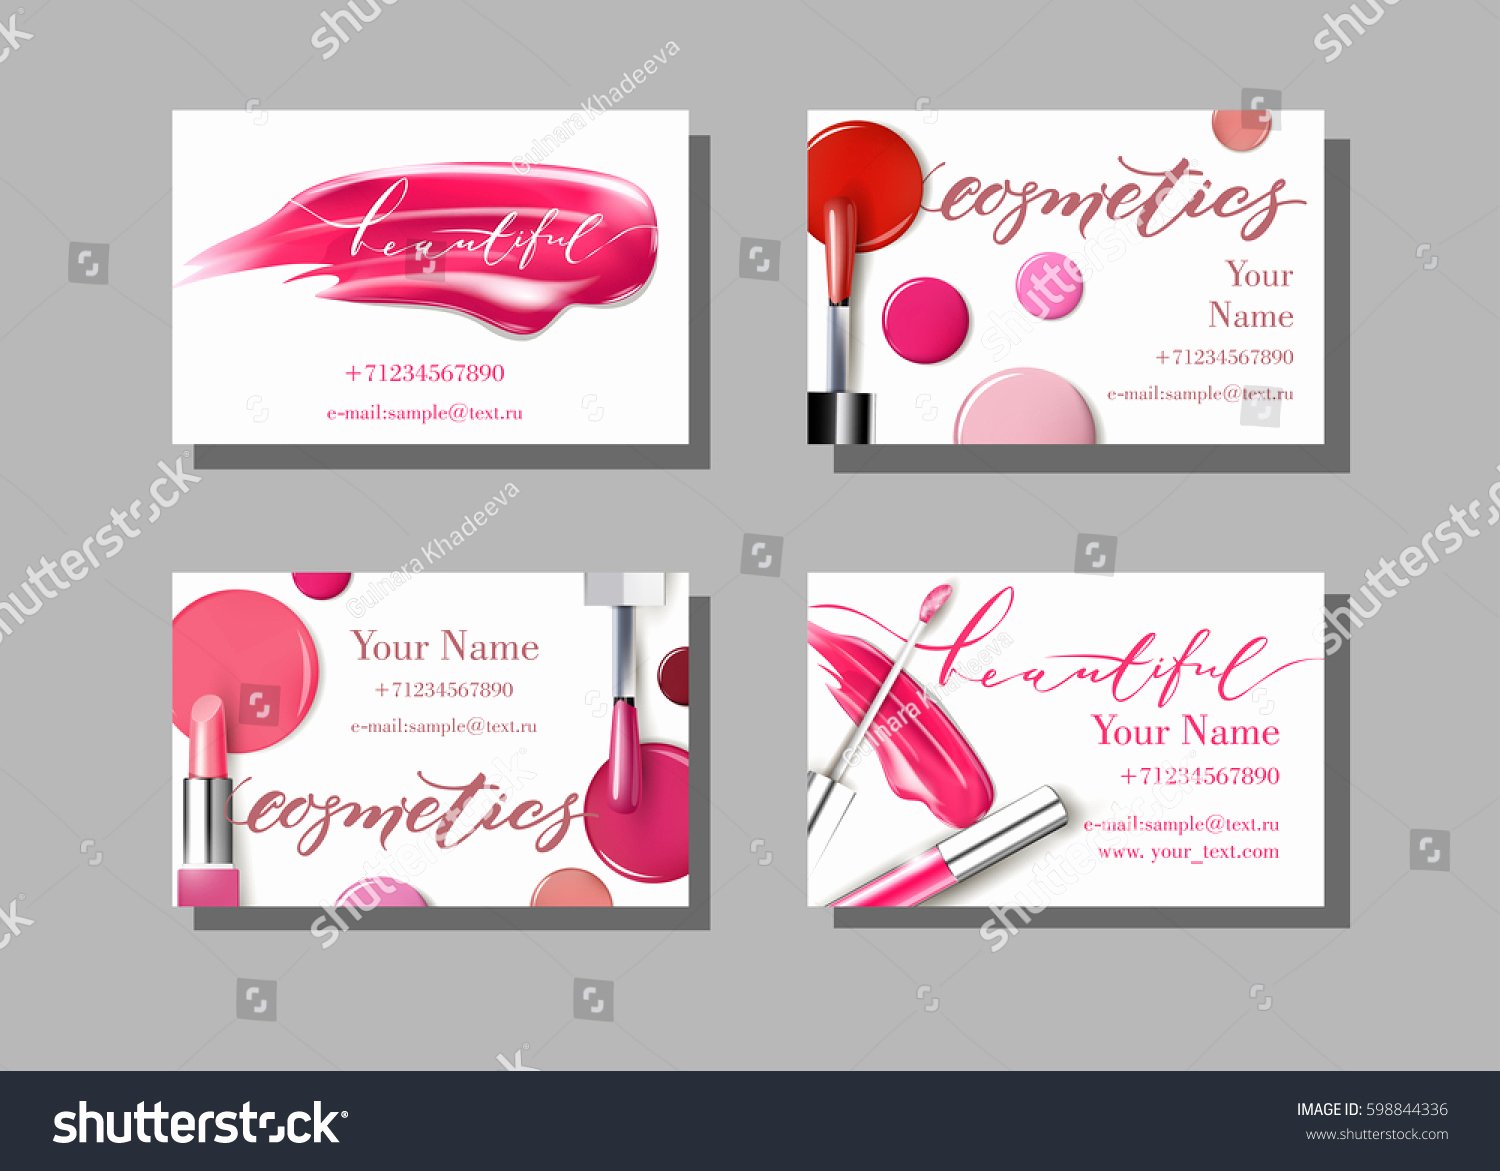 Makeup Artist Website Template Fresh Makeup Artist Business Card Vector Template Stock Vector